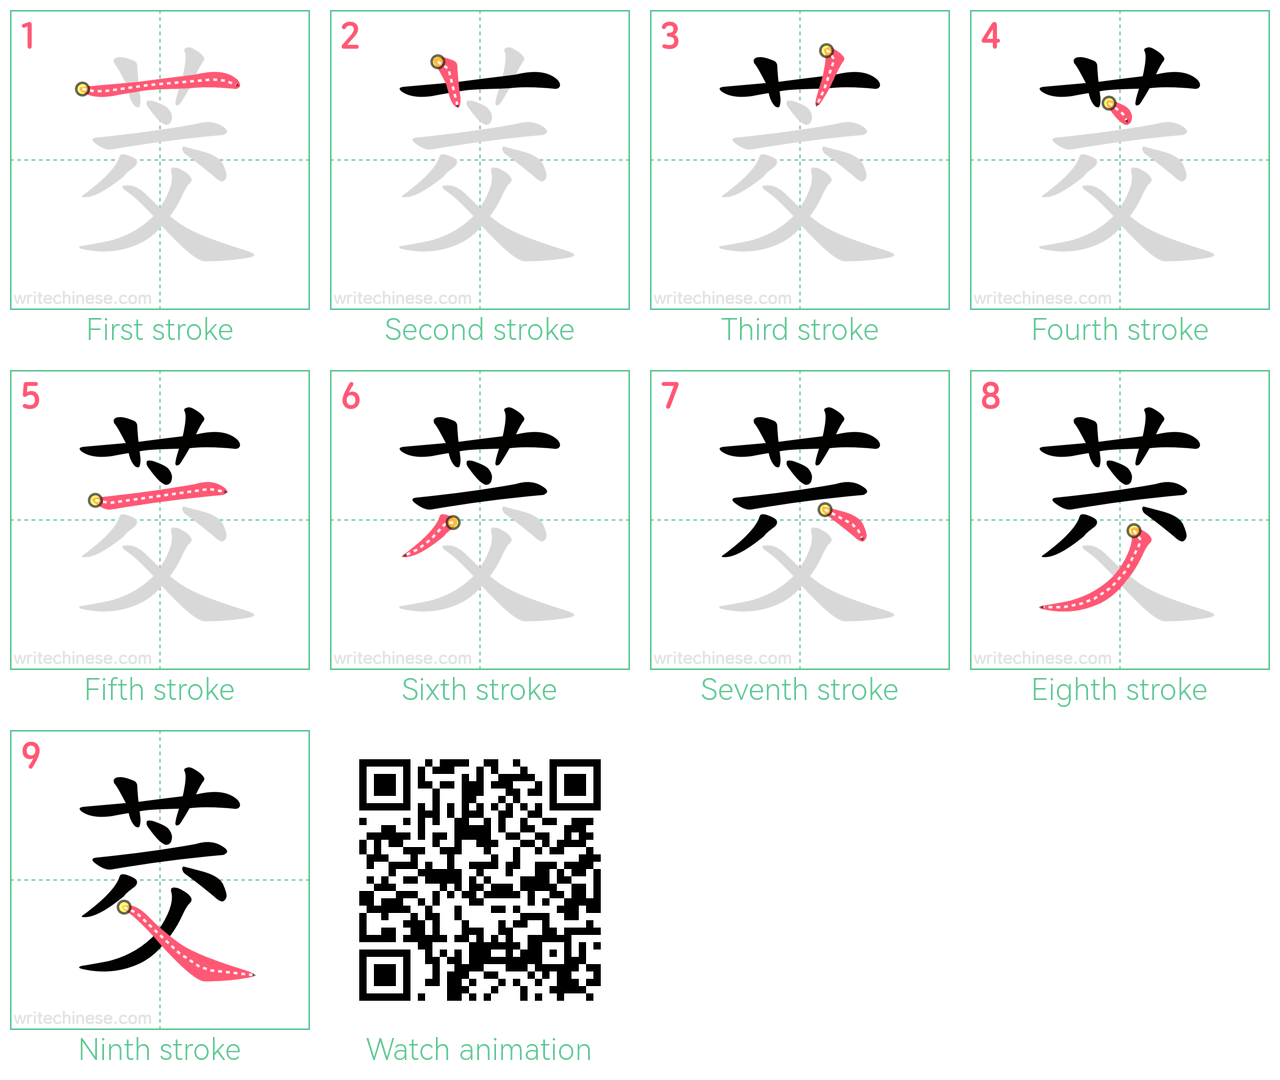 茭 step-by-step stroke order diagrams